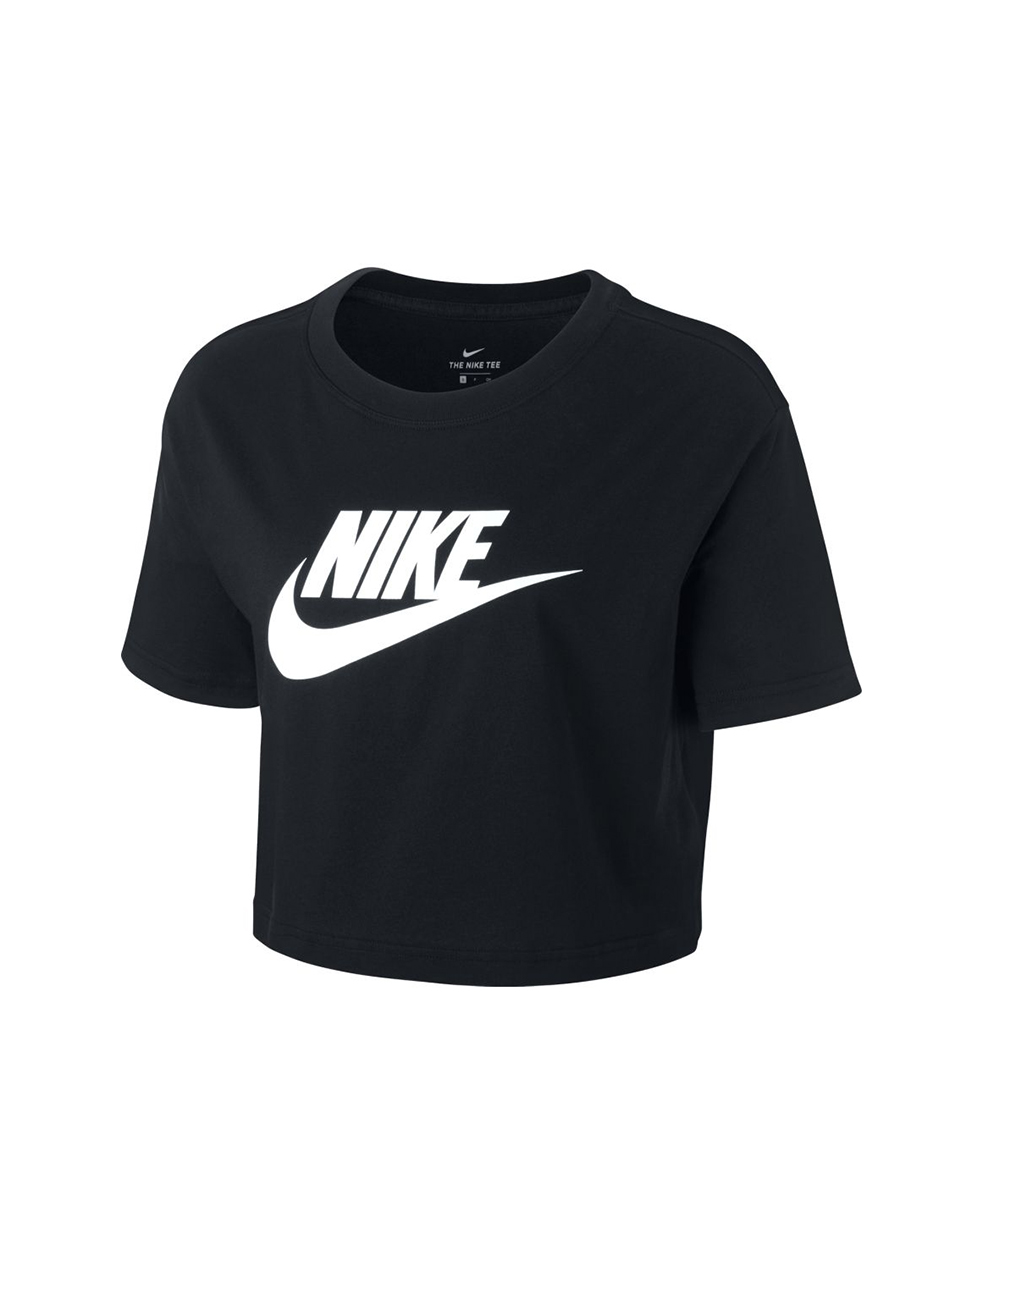 NIKE – Sportswear essential women’s cropped t-shirt black